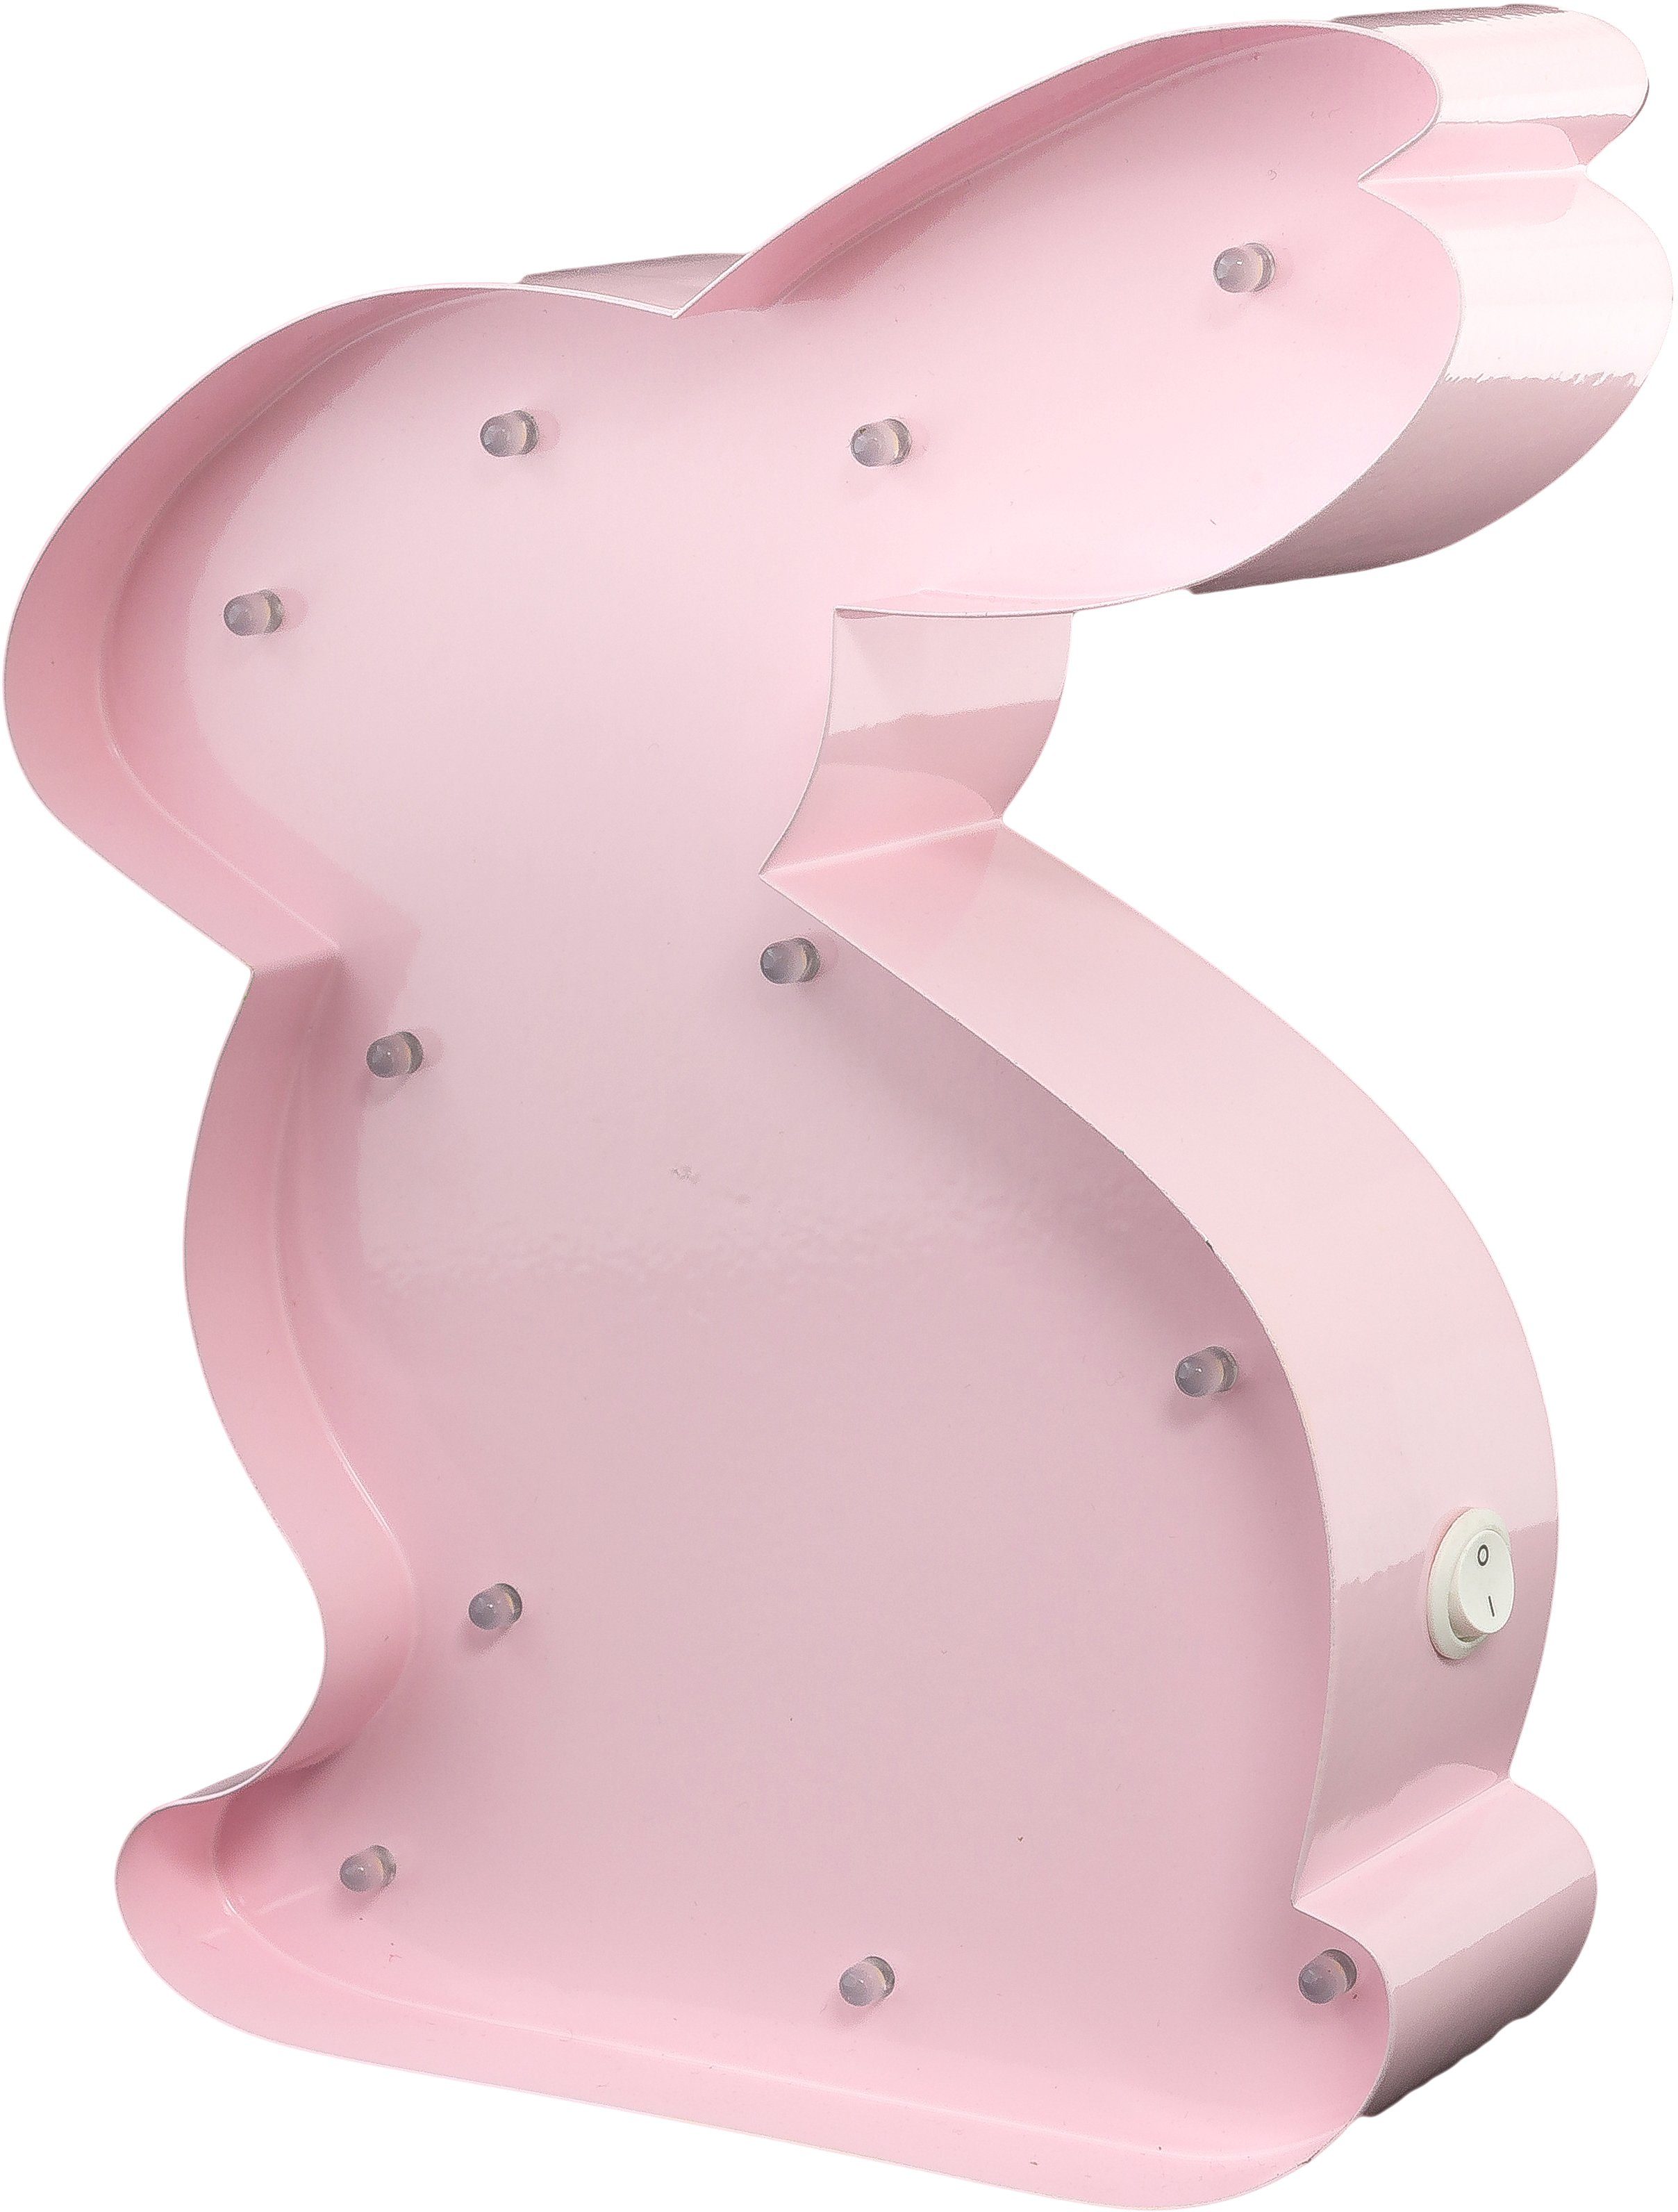 15x23 - Rabbit Wandlampe, LED LED LIGHTS fest Warmweiß, 11 cm integriert, festverbauten LEDs Tischlampe MARQUEE mit Rabbit, Dekolicht